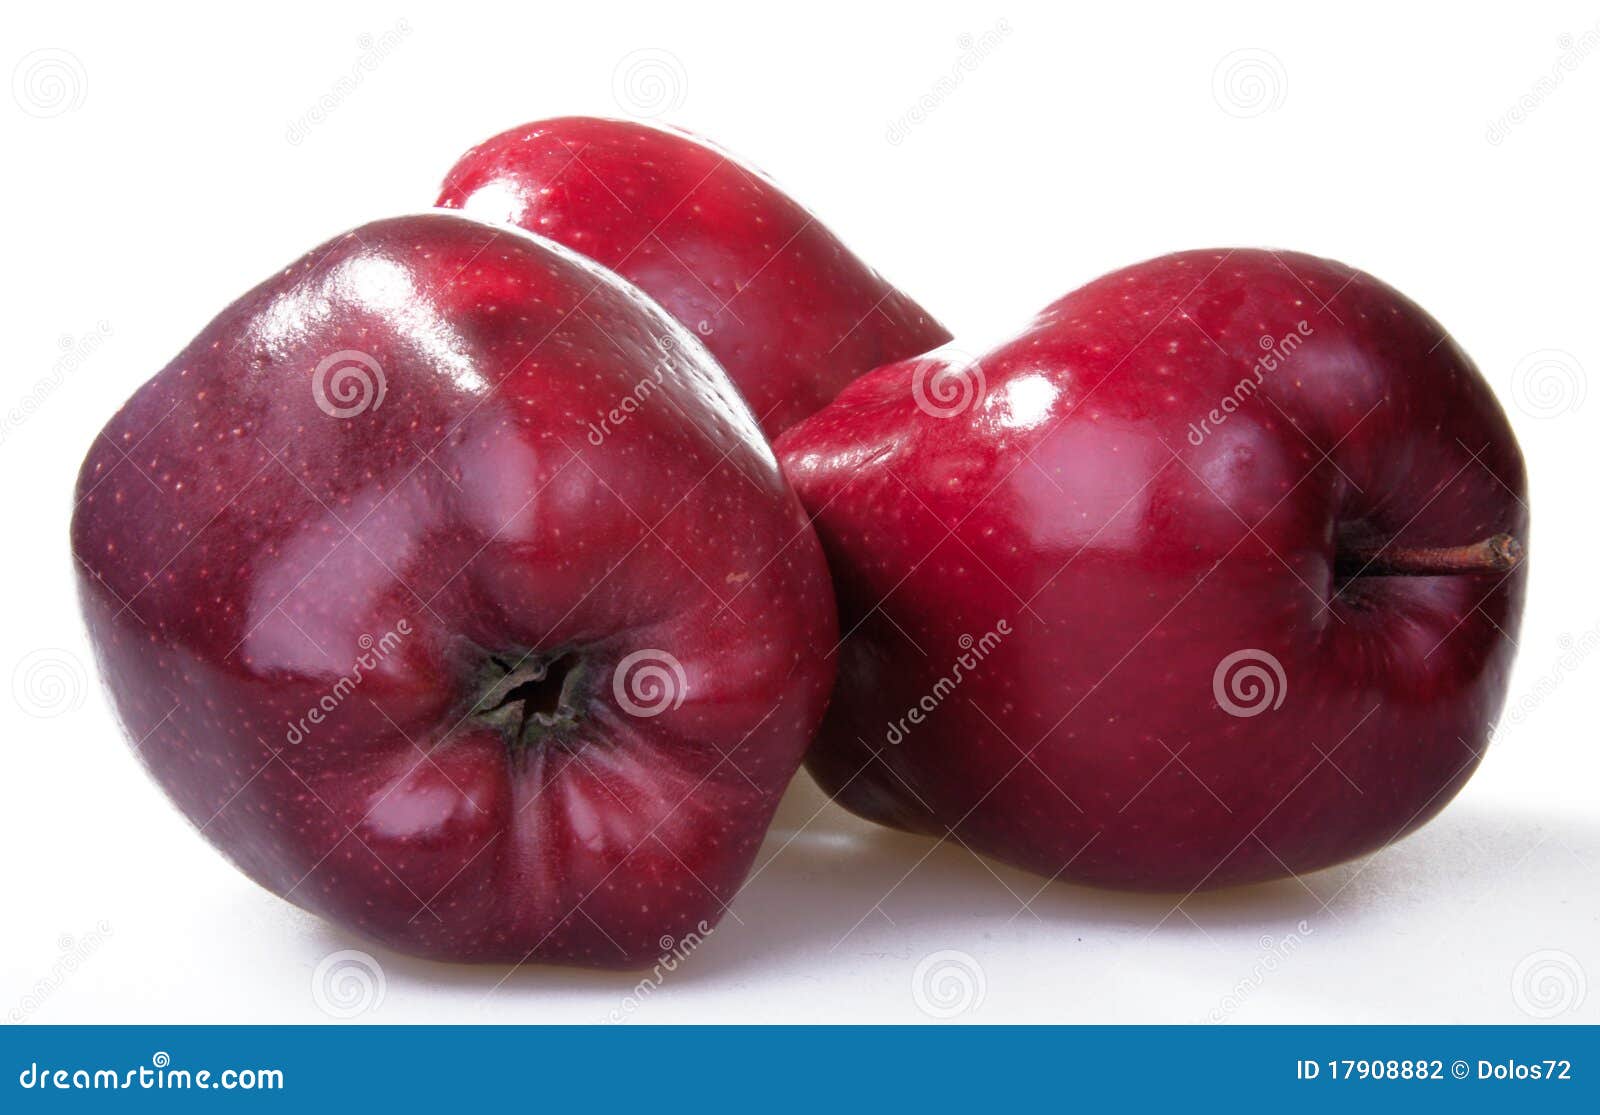 17908882 Apfel Der einzeln stockfoto. vertikal, rote frucht, Bild - von